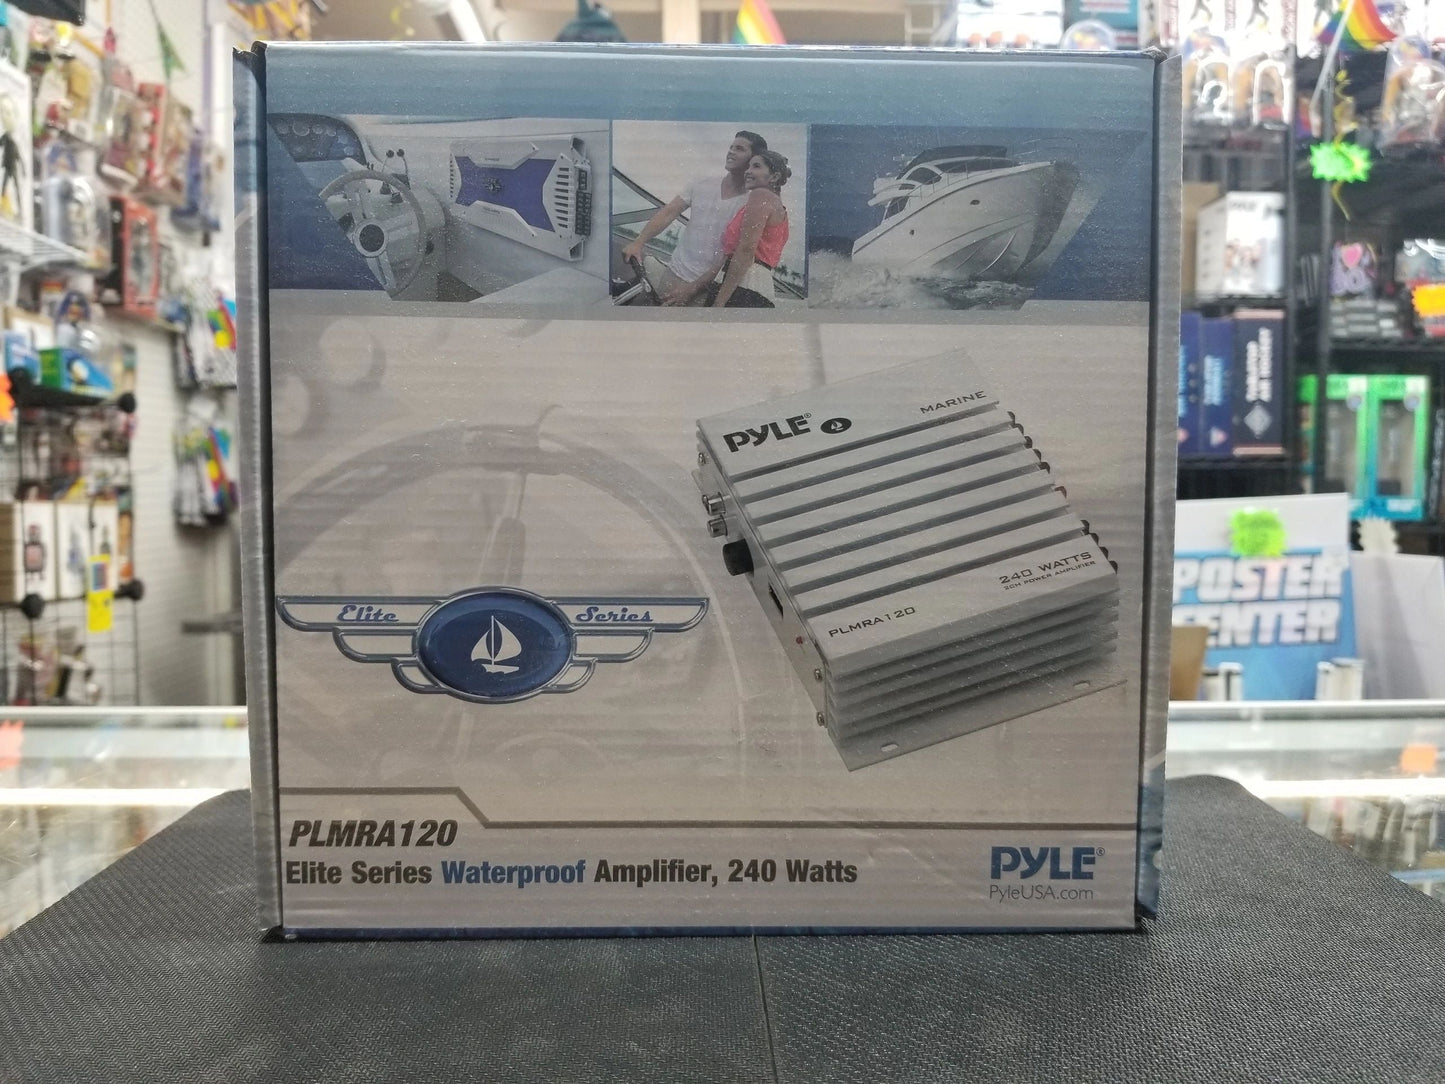 Pyle Elite Series Waterproof Amplifier